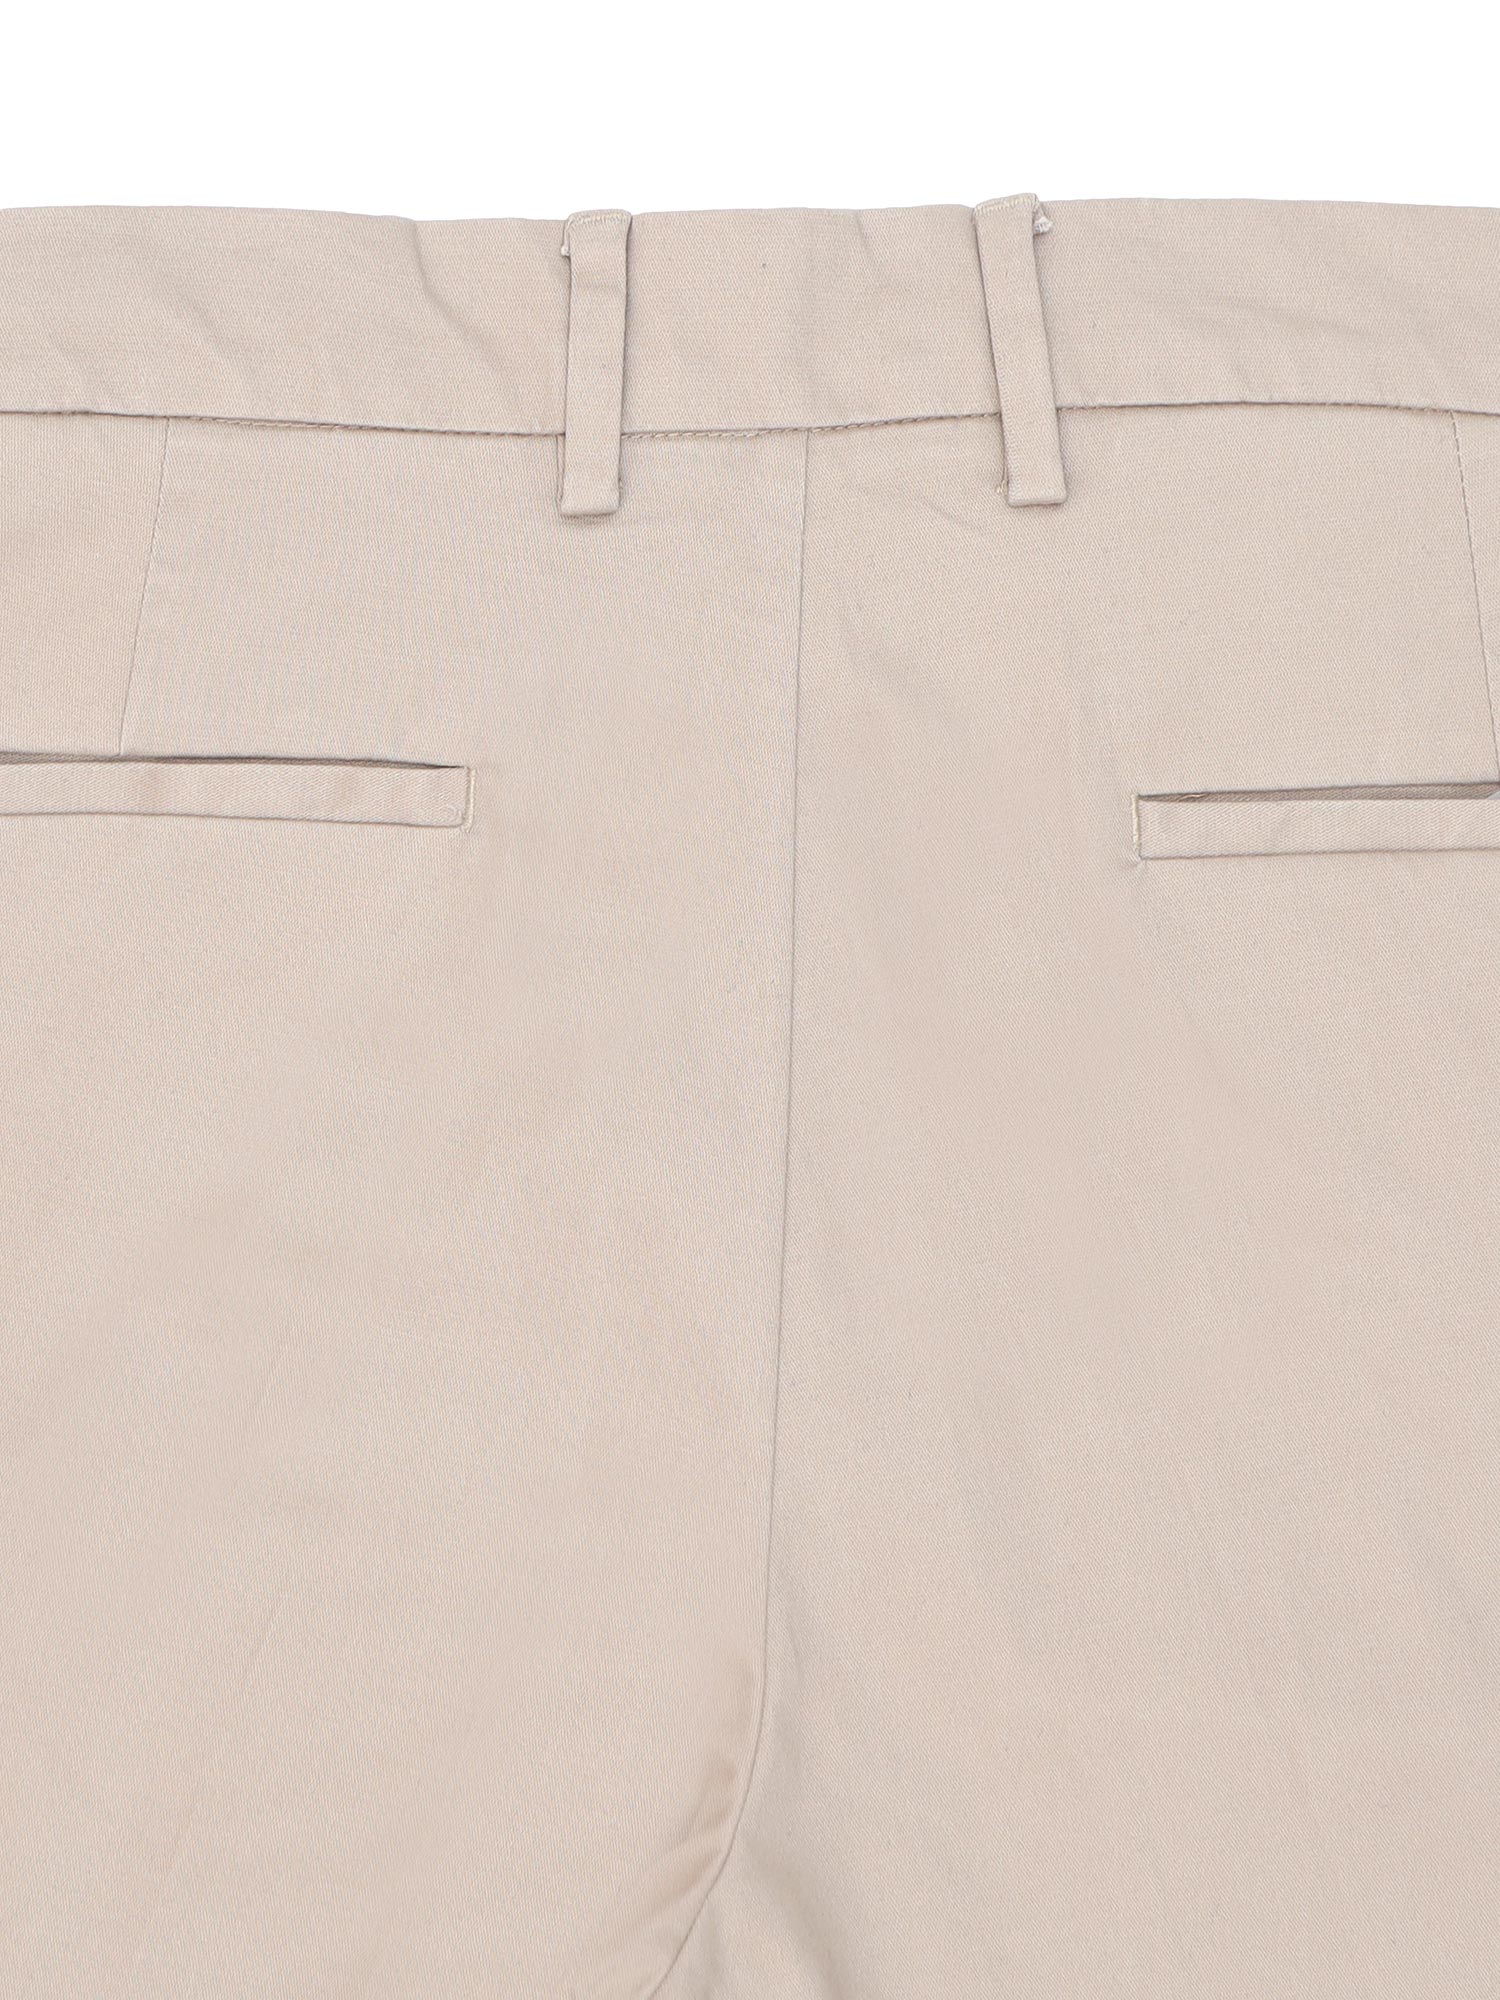 Women Beige Color 100% Cotton Solid Trousers & Pant